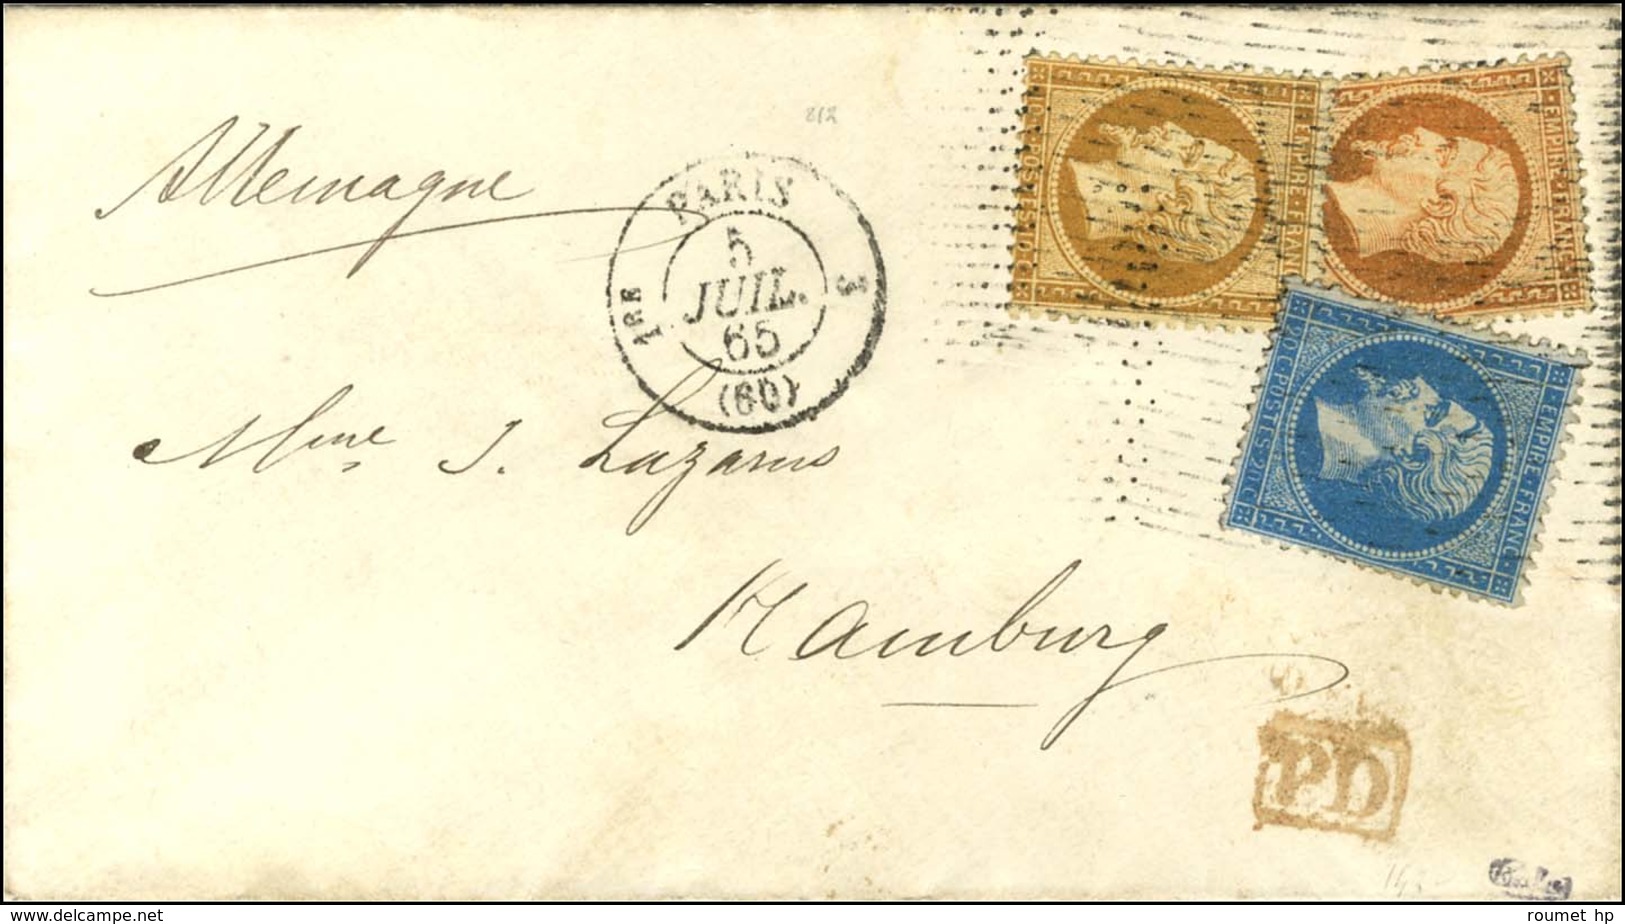 Rouleau De Pointillés / N° 21 + 22 + 23 Càd PARIS (60) Sur Lettre Pour Hambourg. 1865. - TB / SUP. - 1862 Napoleon III